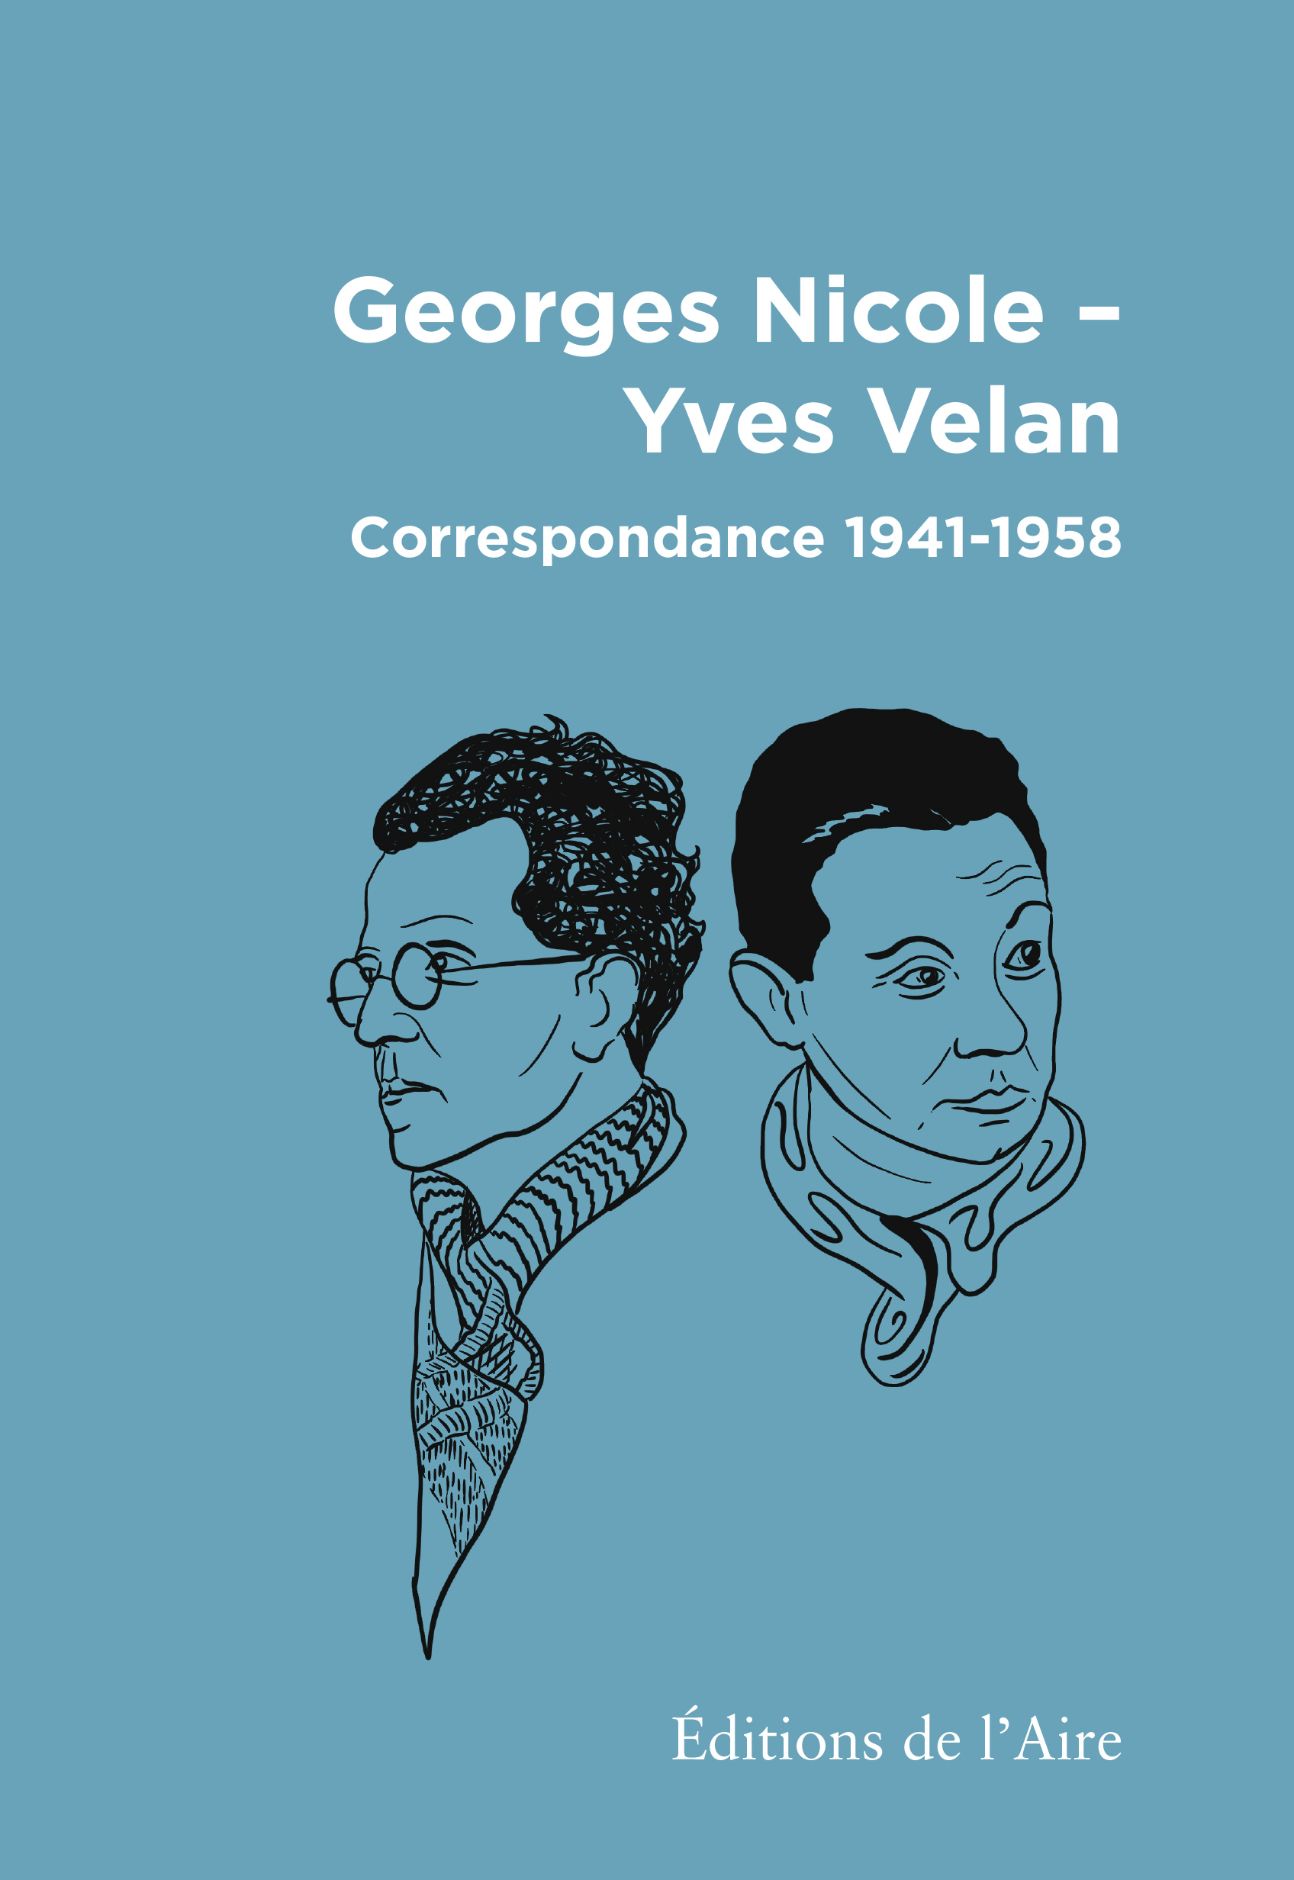 Georges Nicole - Yves Velan, Correspondance 1941-1958